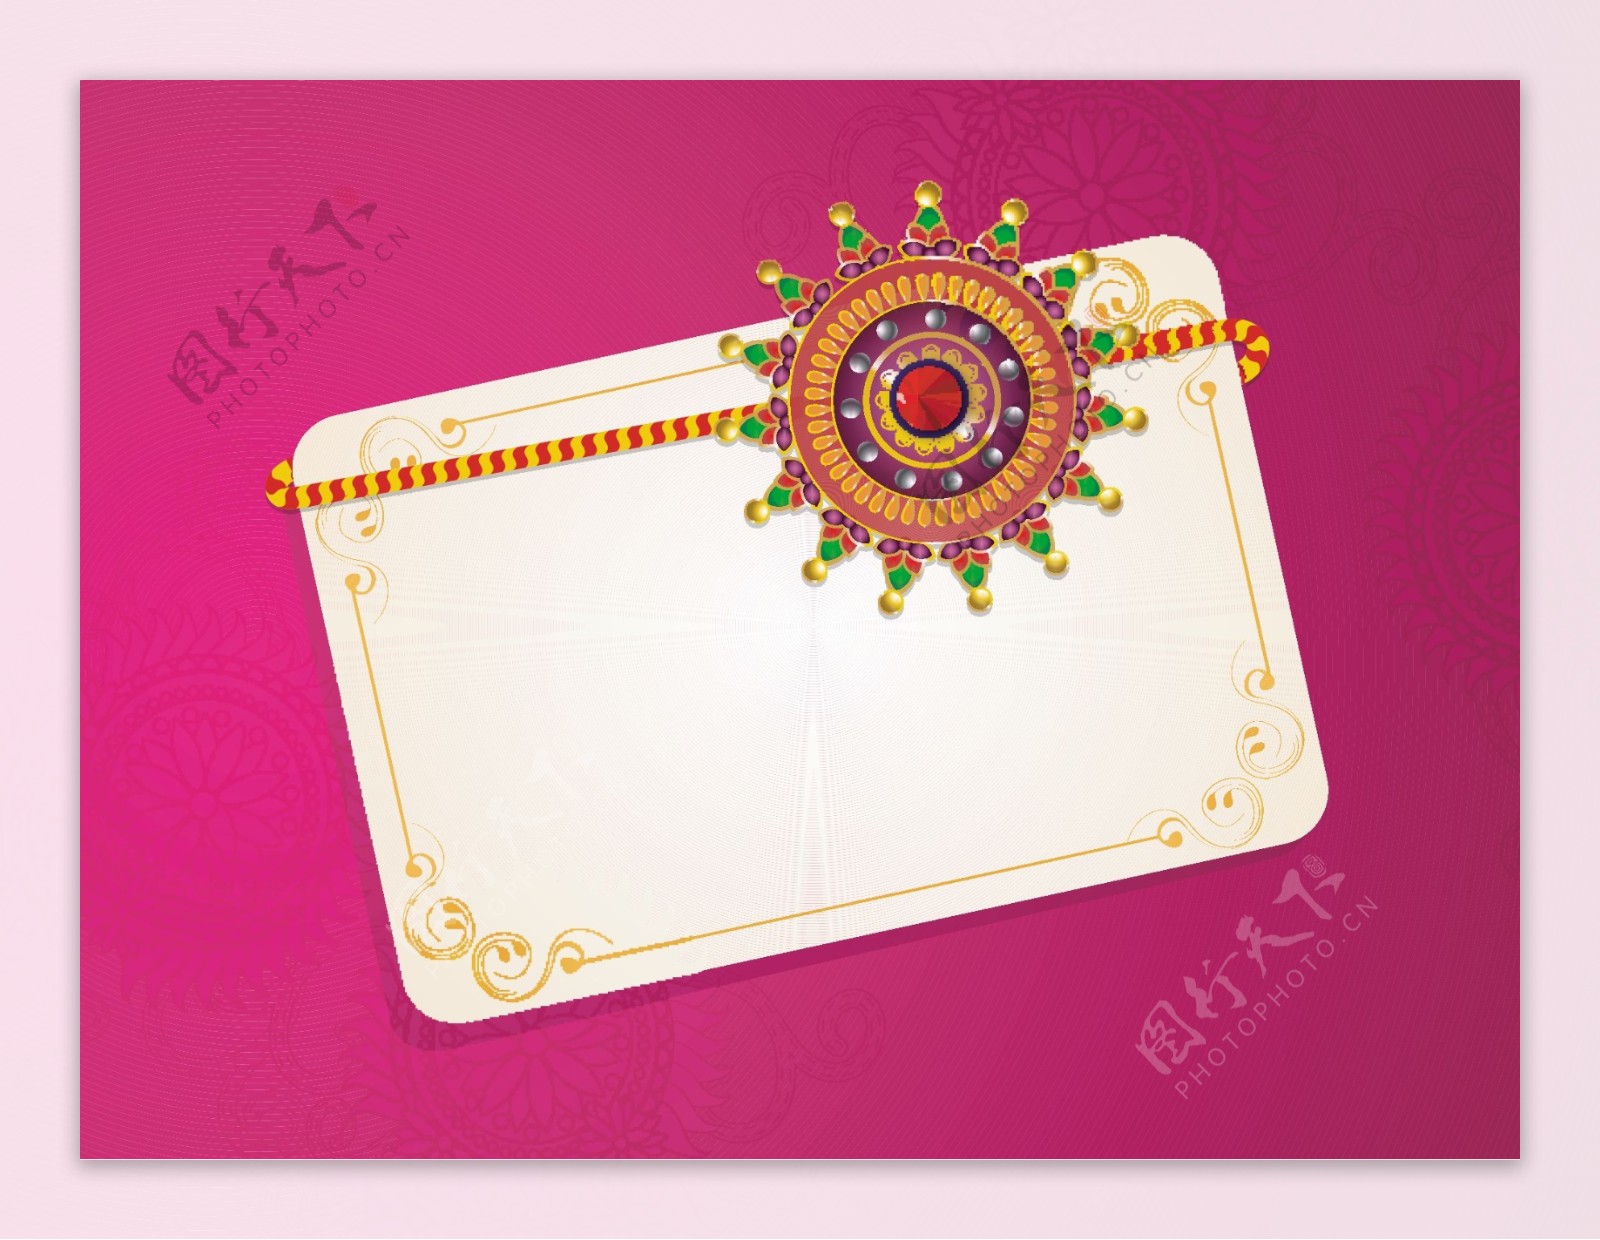 美丽的装饰礼品卡或问候rakhi印度兄妹结合节日卡的设计RakshaBandhan庆祝